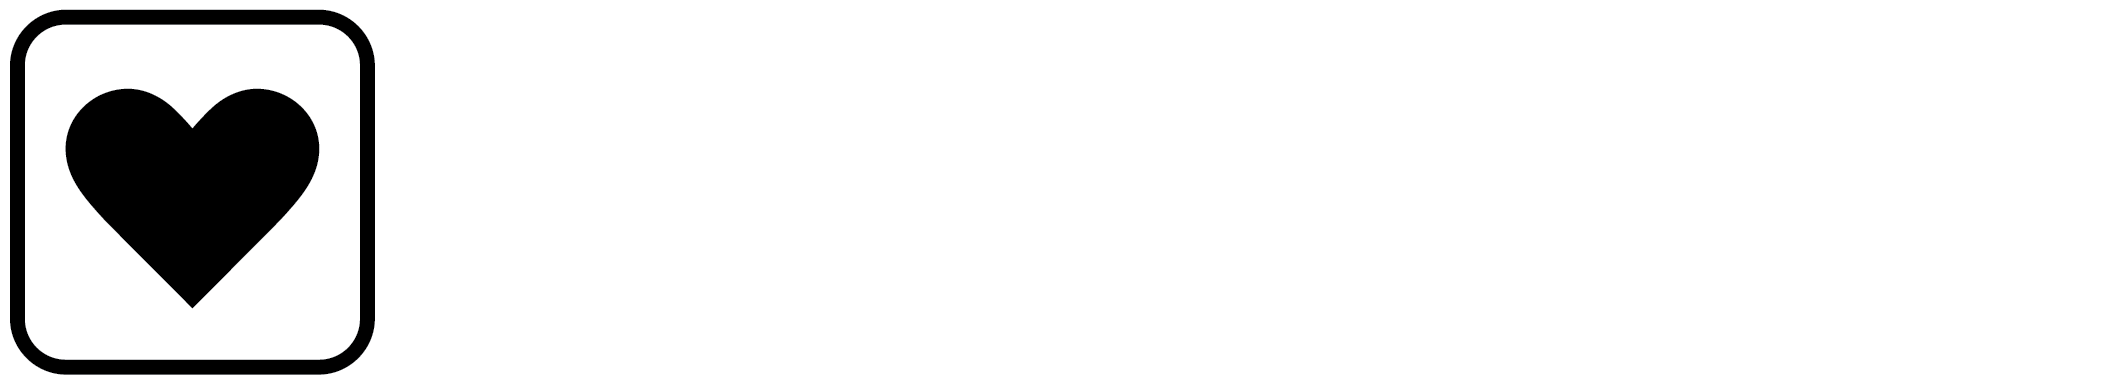 Best Western Plus Amstelveen